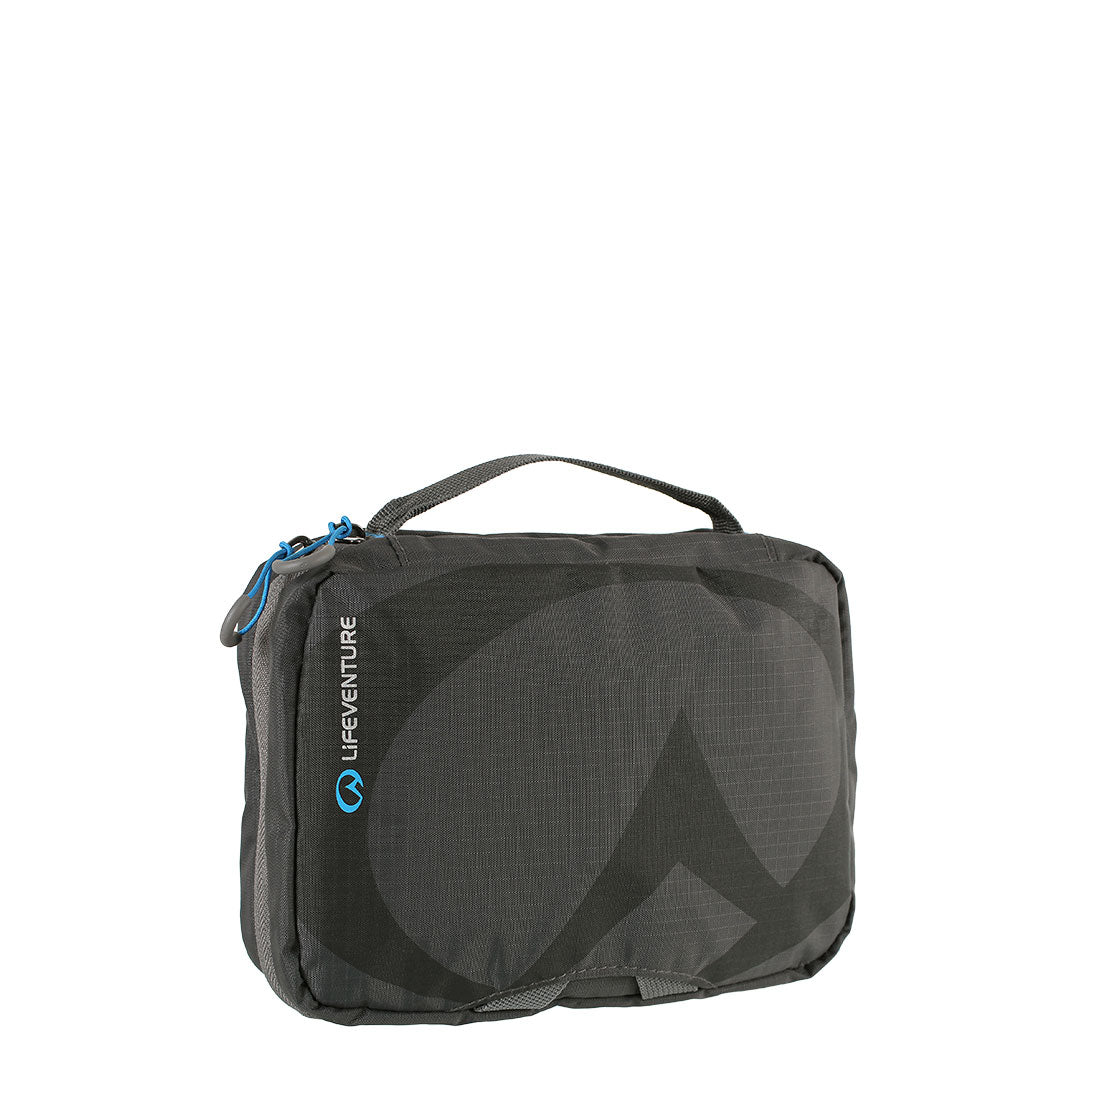 Travel Wash Bag - Small (Grey)